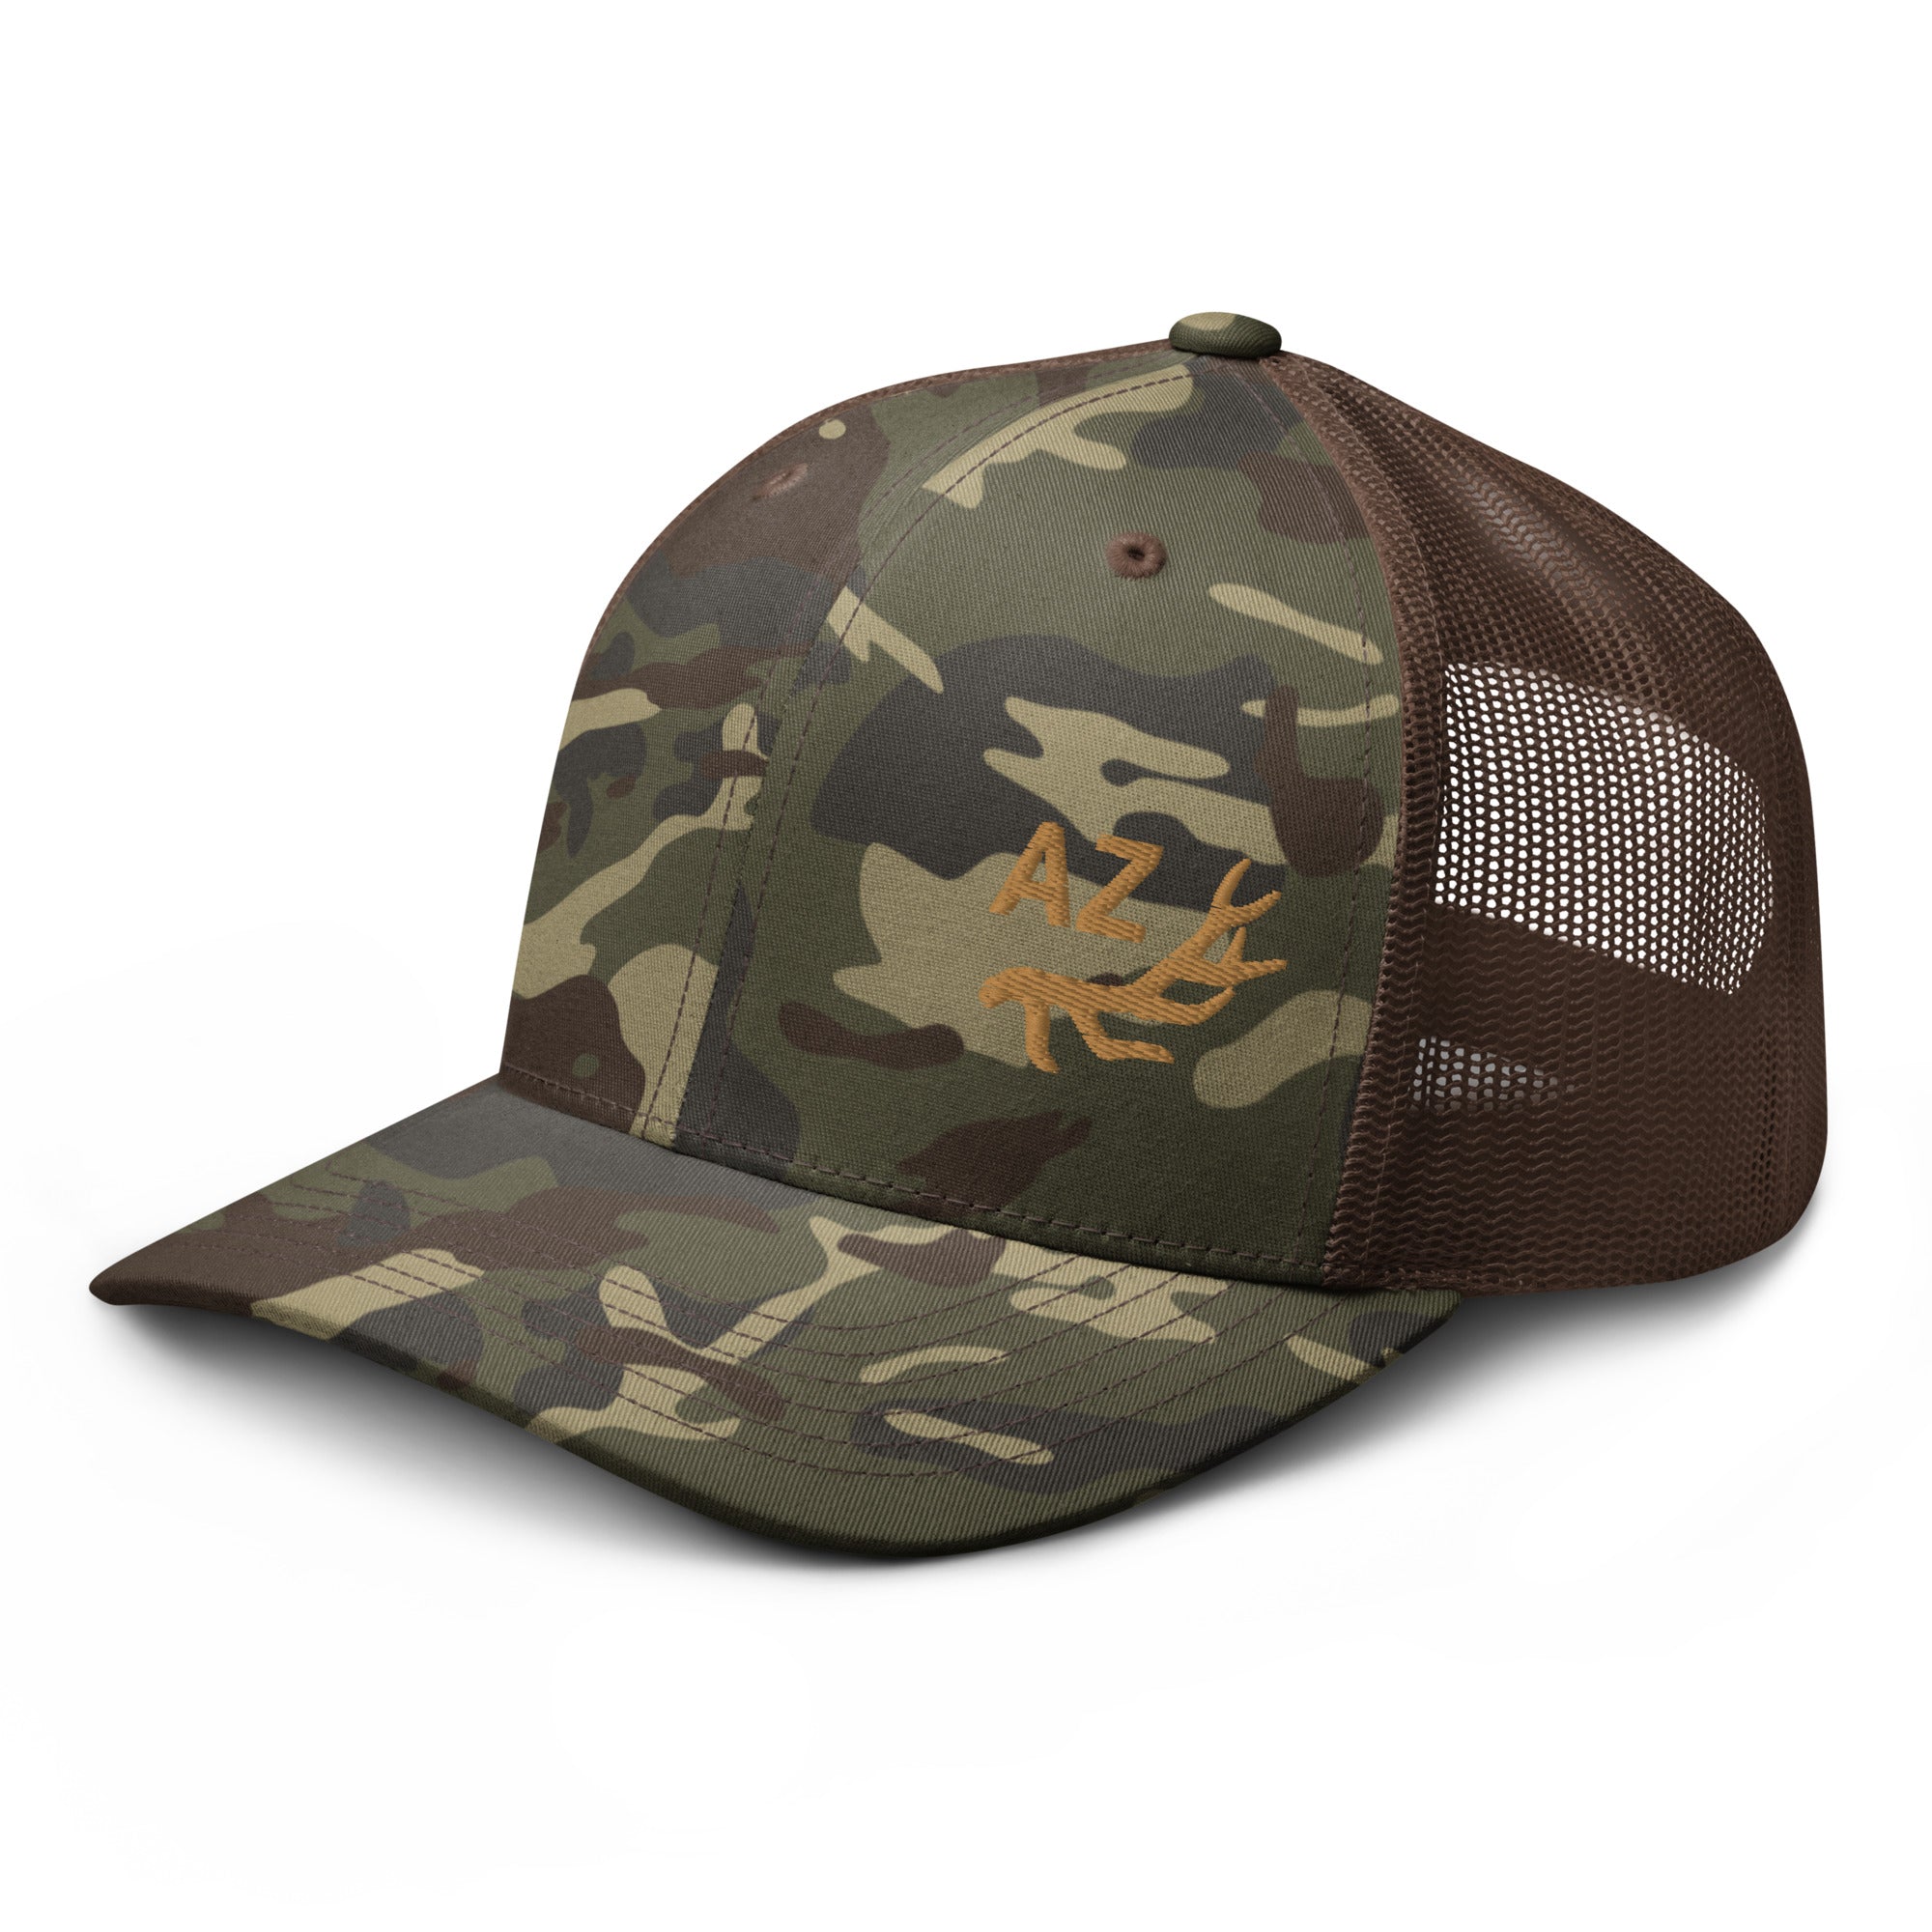 camouflage-trucker-hat-camo-brown-left-front-655e60c3d390c.jpg